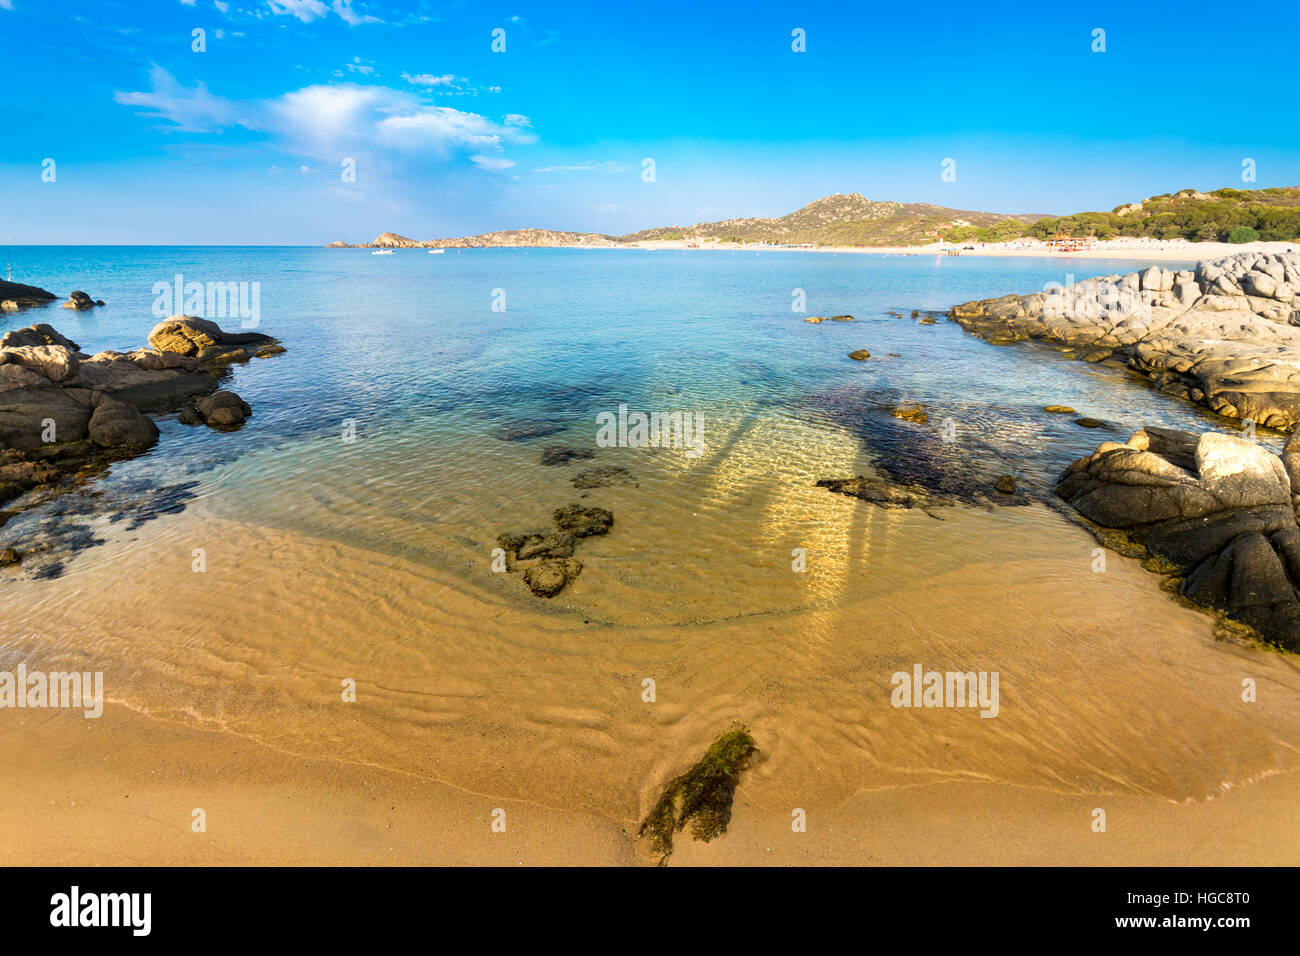 Das Meer und die unberührten Strände von Chia, Insel Sardinien, Italien. Stockfoto